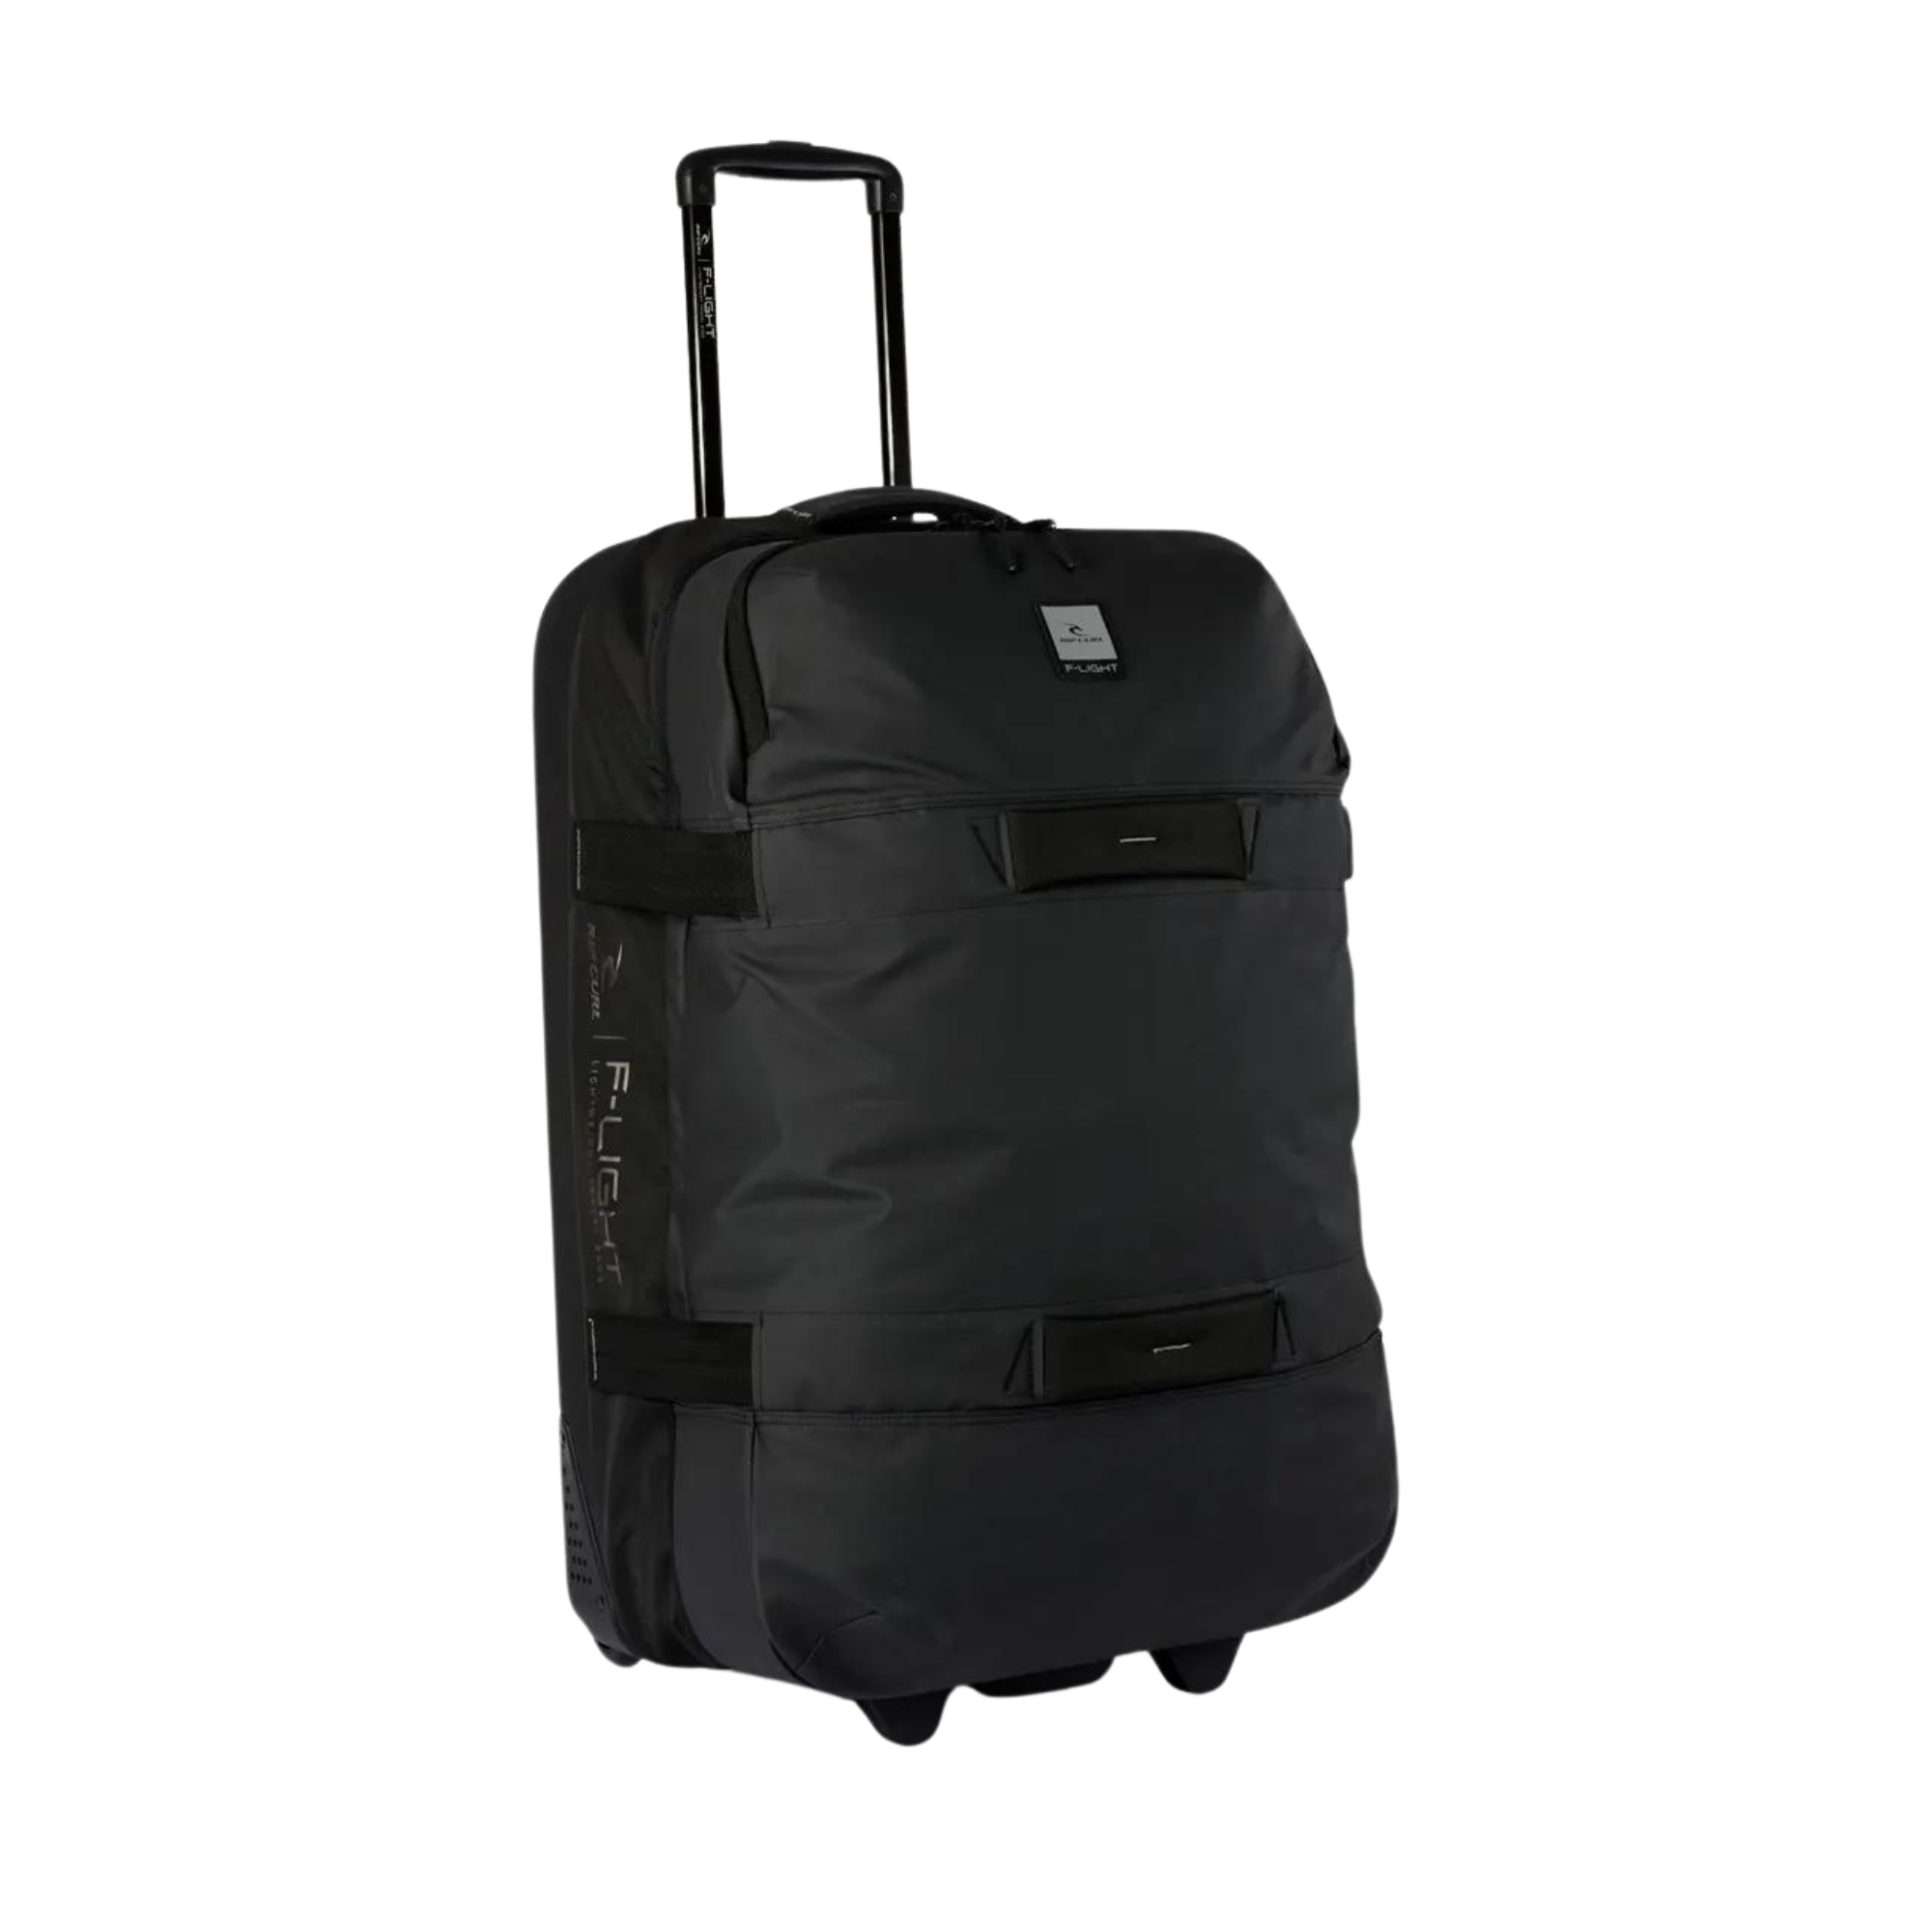 Rip Curl F-Light Global Wheeled Travel Bag 110L - Midnight